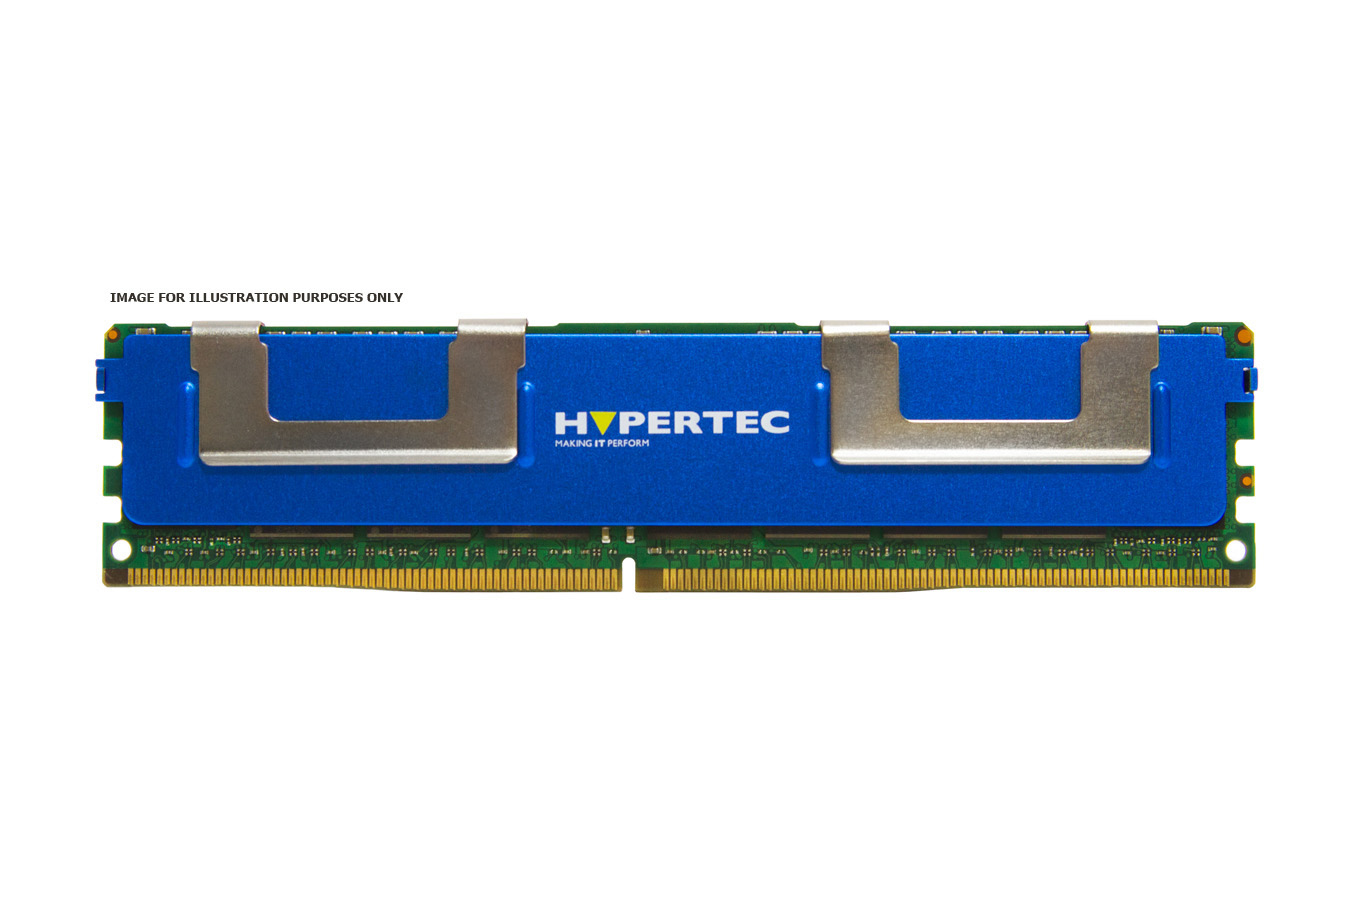 Hypertec HYMHY8216G/DR memory module 16 GB DDR3 1333 MHz ECC